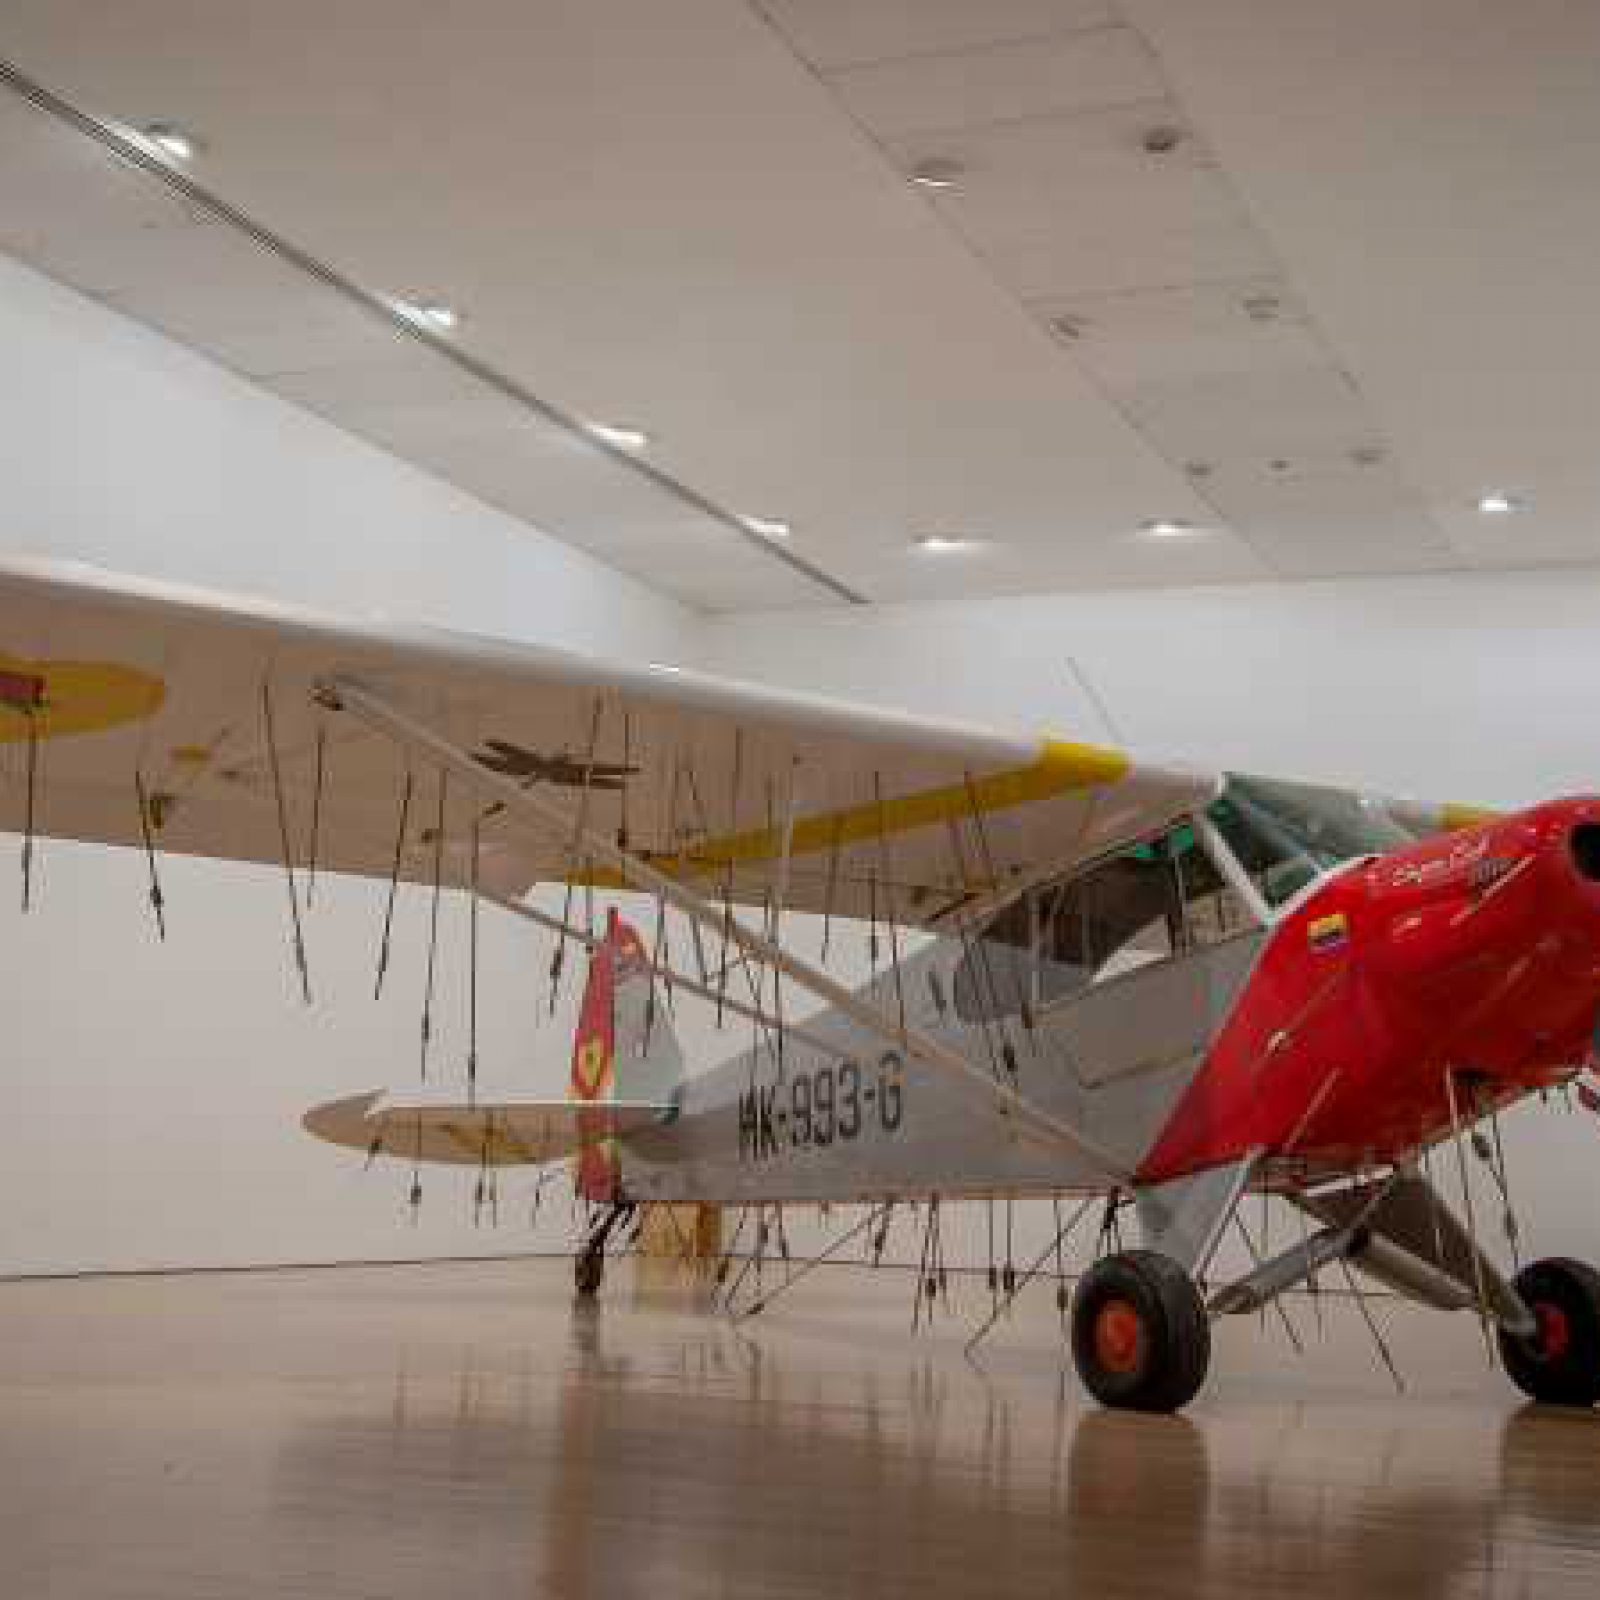 Avión (2011) de Los Carpinteros, parte de su muestra La cosa está candela en el Museo de Arte Miguel Urrutia, Bogotá. Foto: Daniel Martín Corona; cortesía de Fortes D’ Aloia & Gabriel, Sao Paulo.